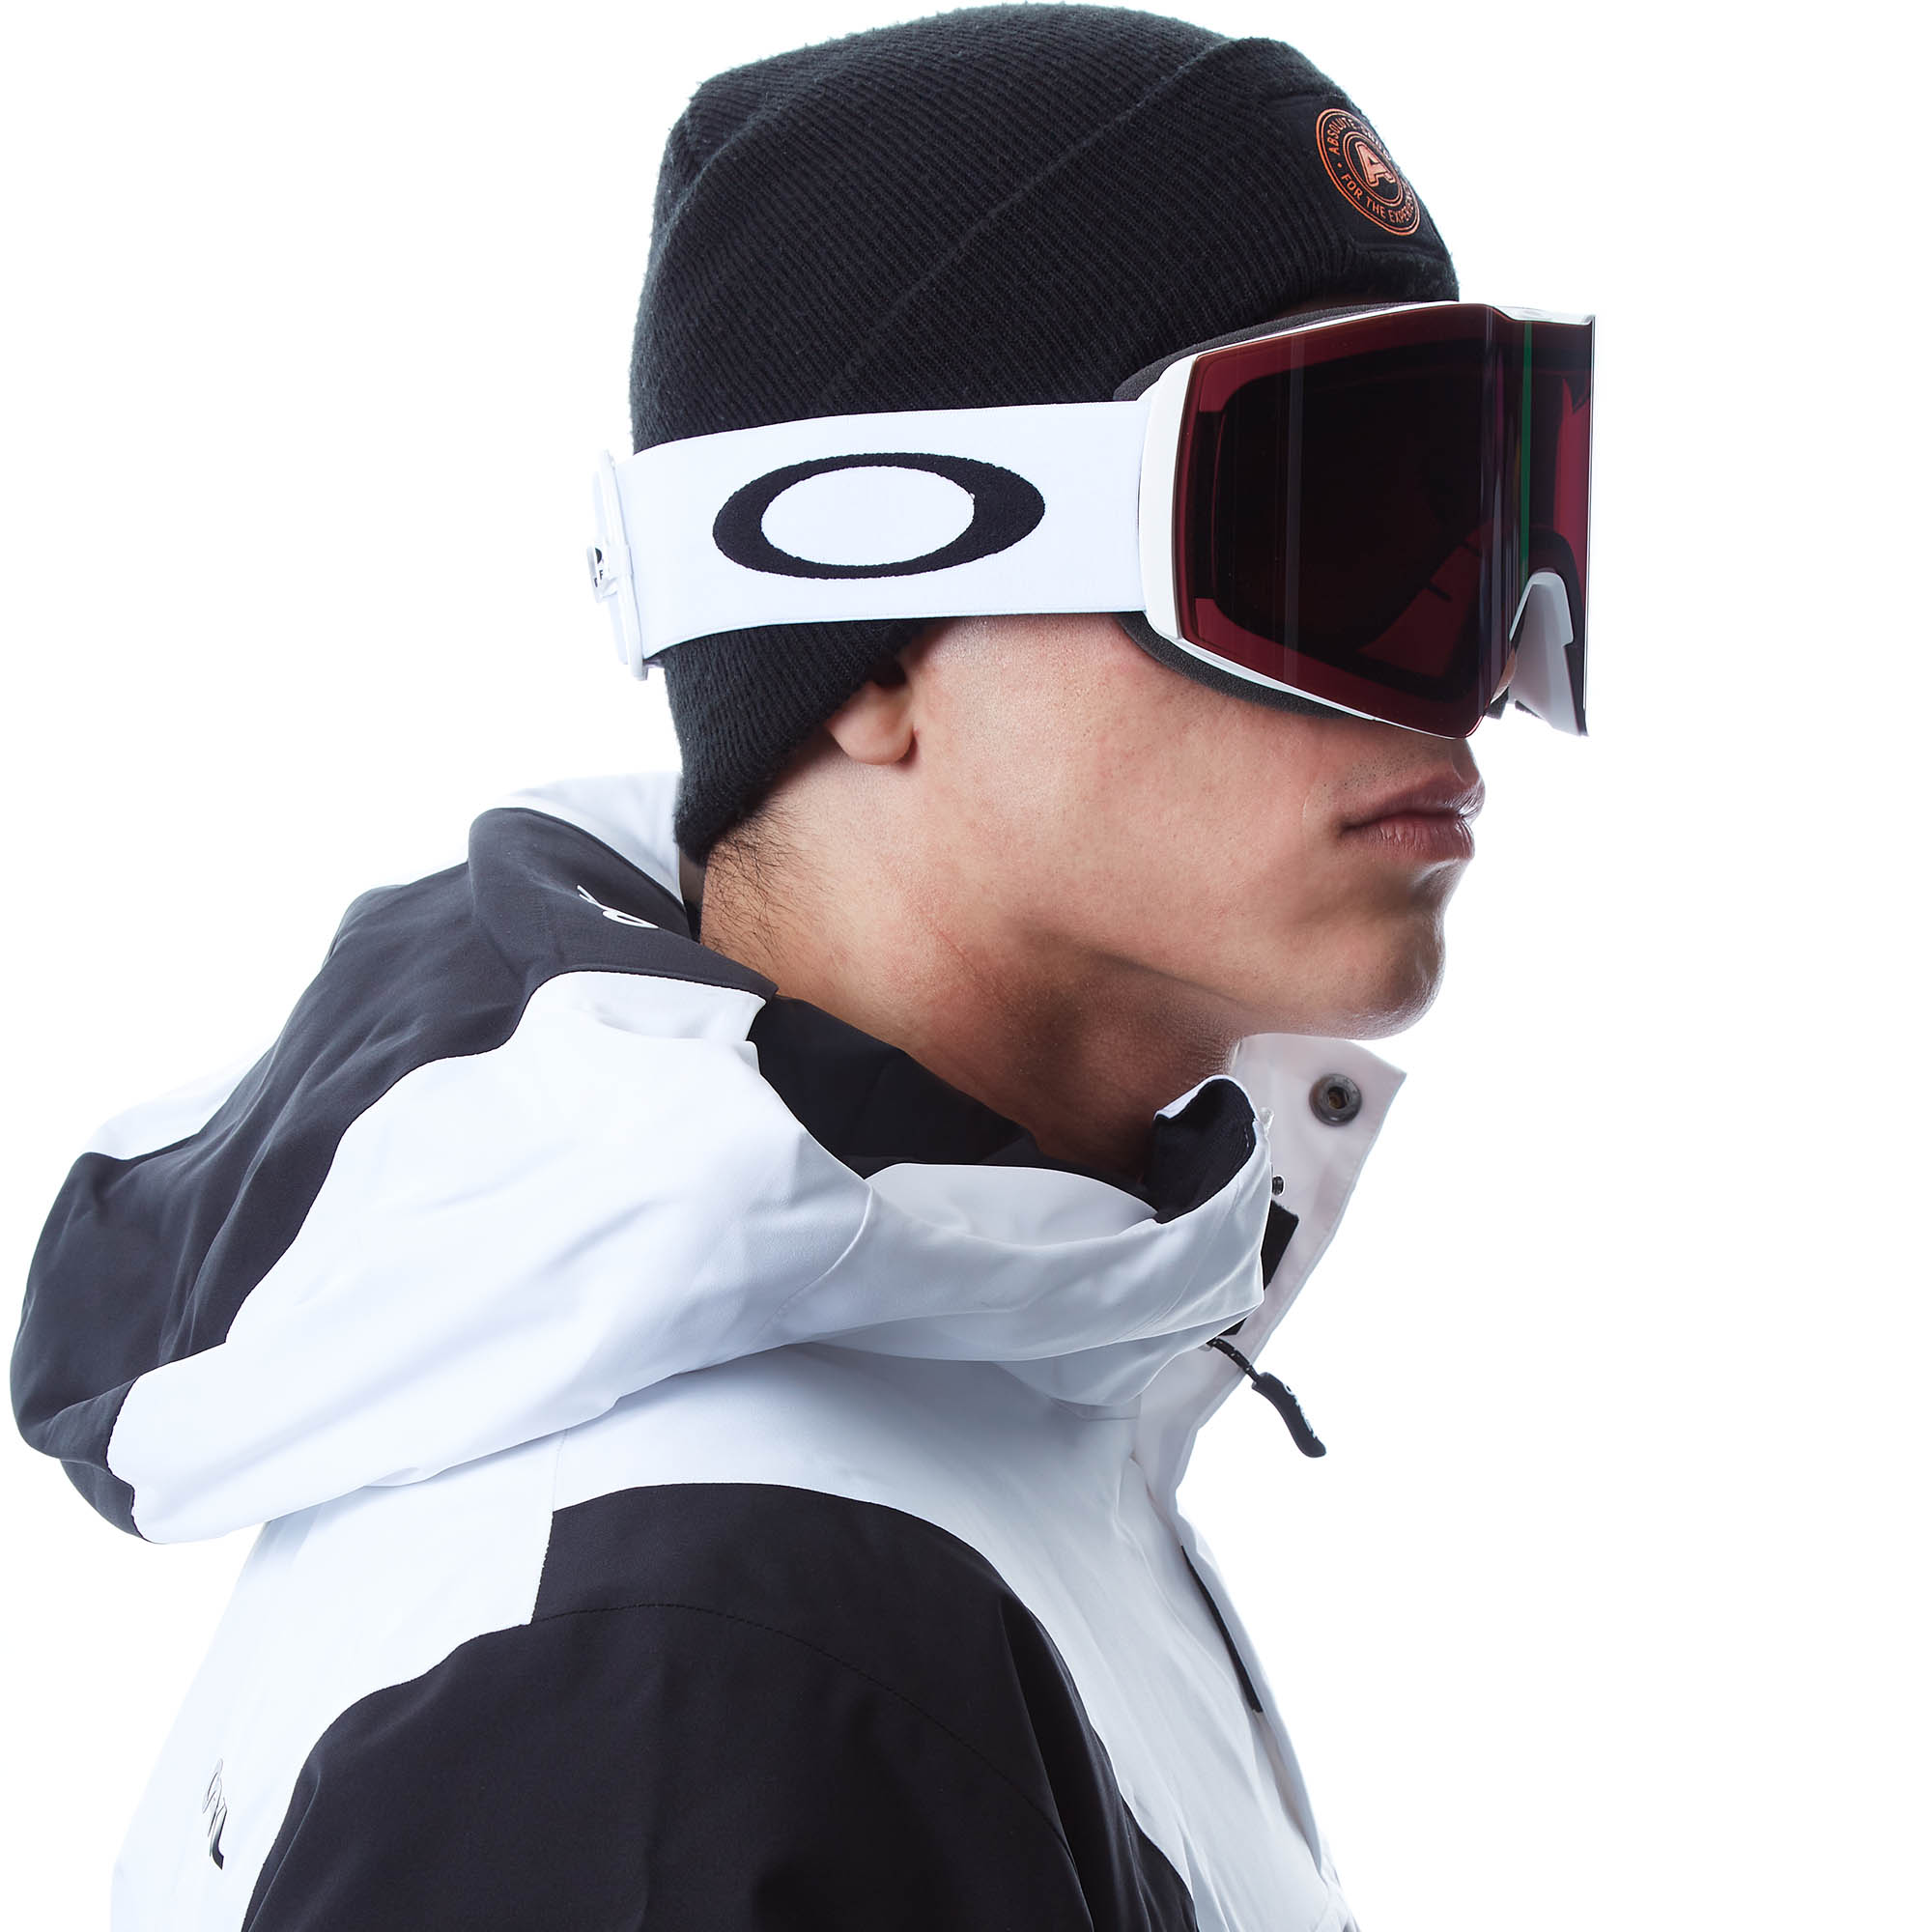 Oakley Fall Line L Snowboard/Ski Goggles